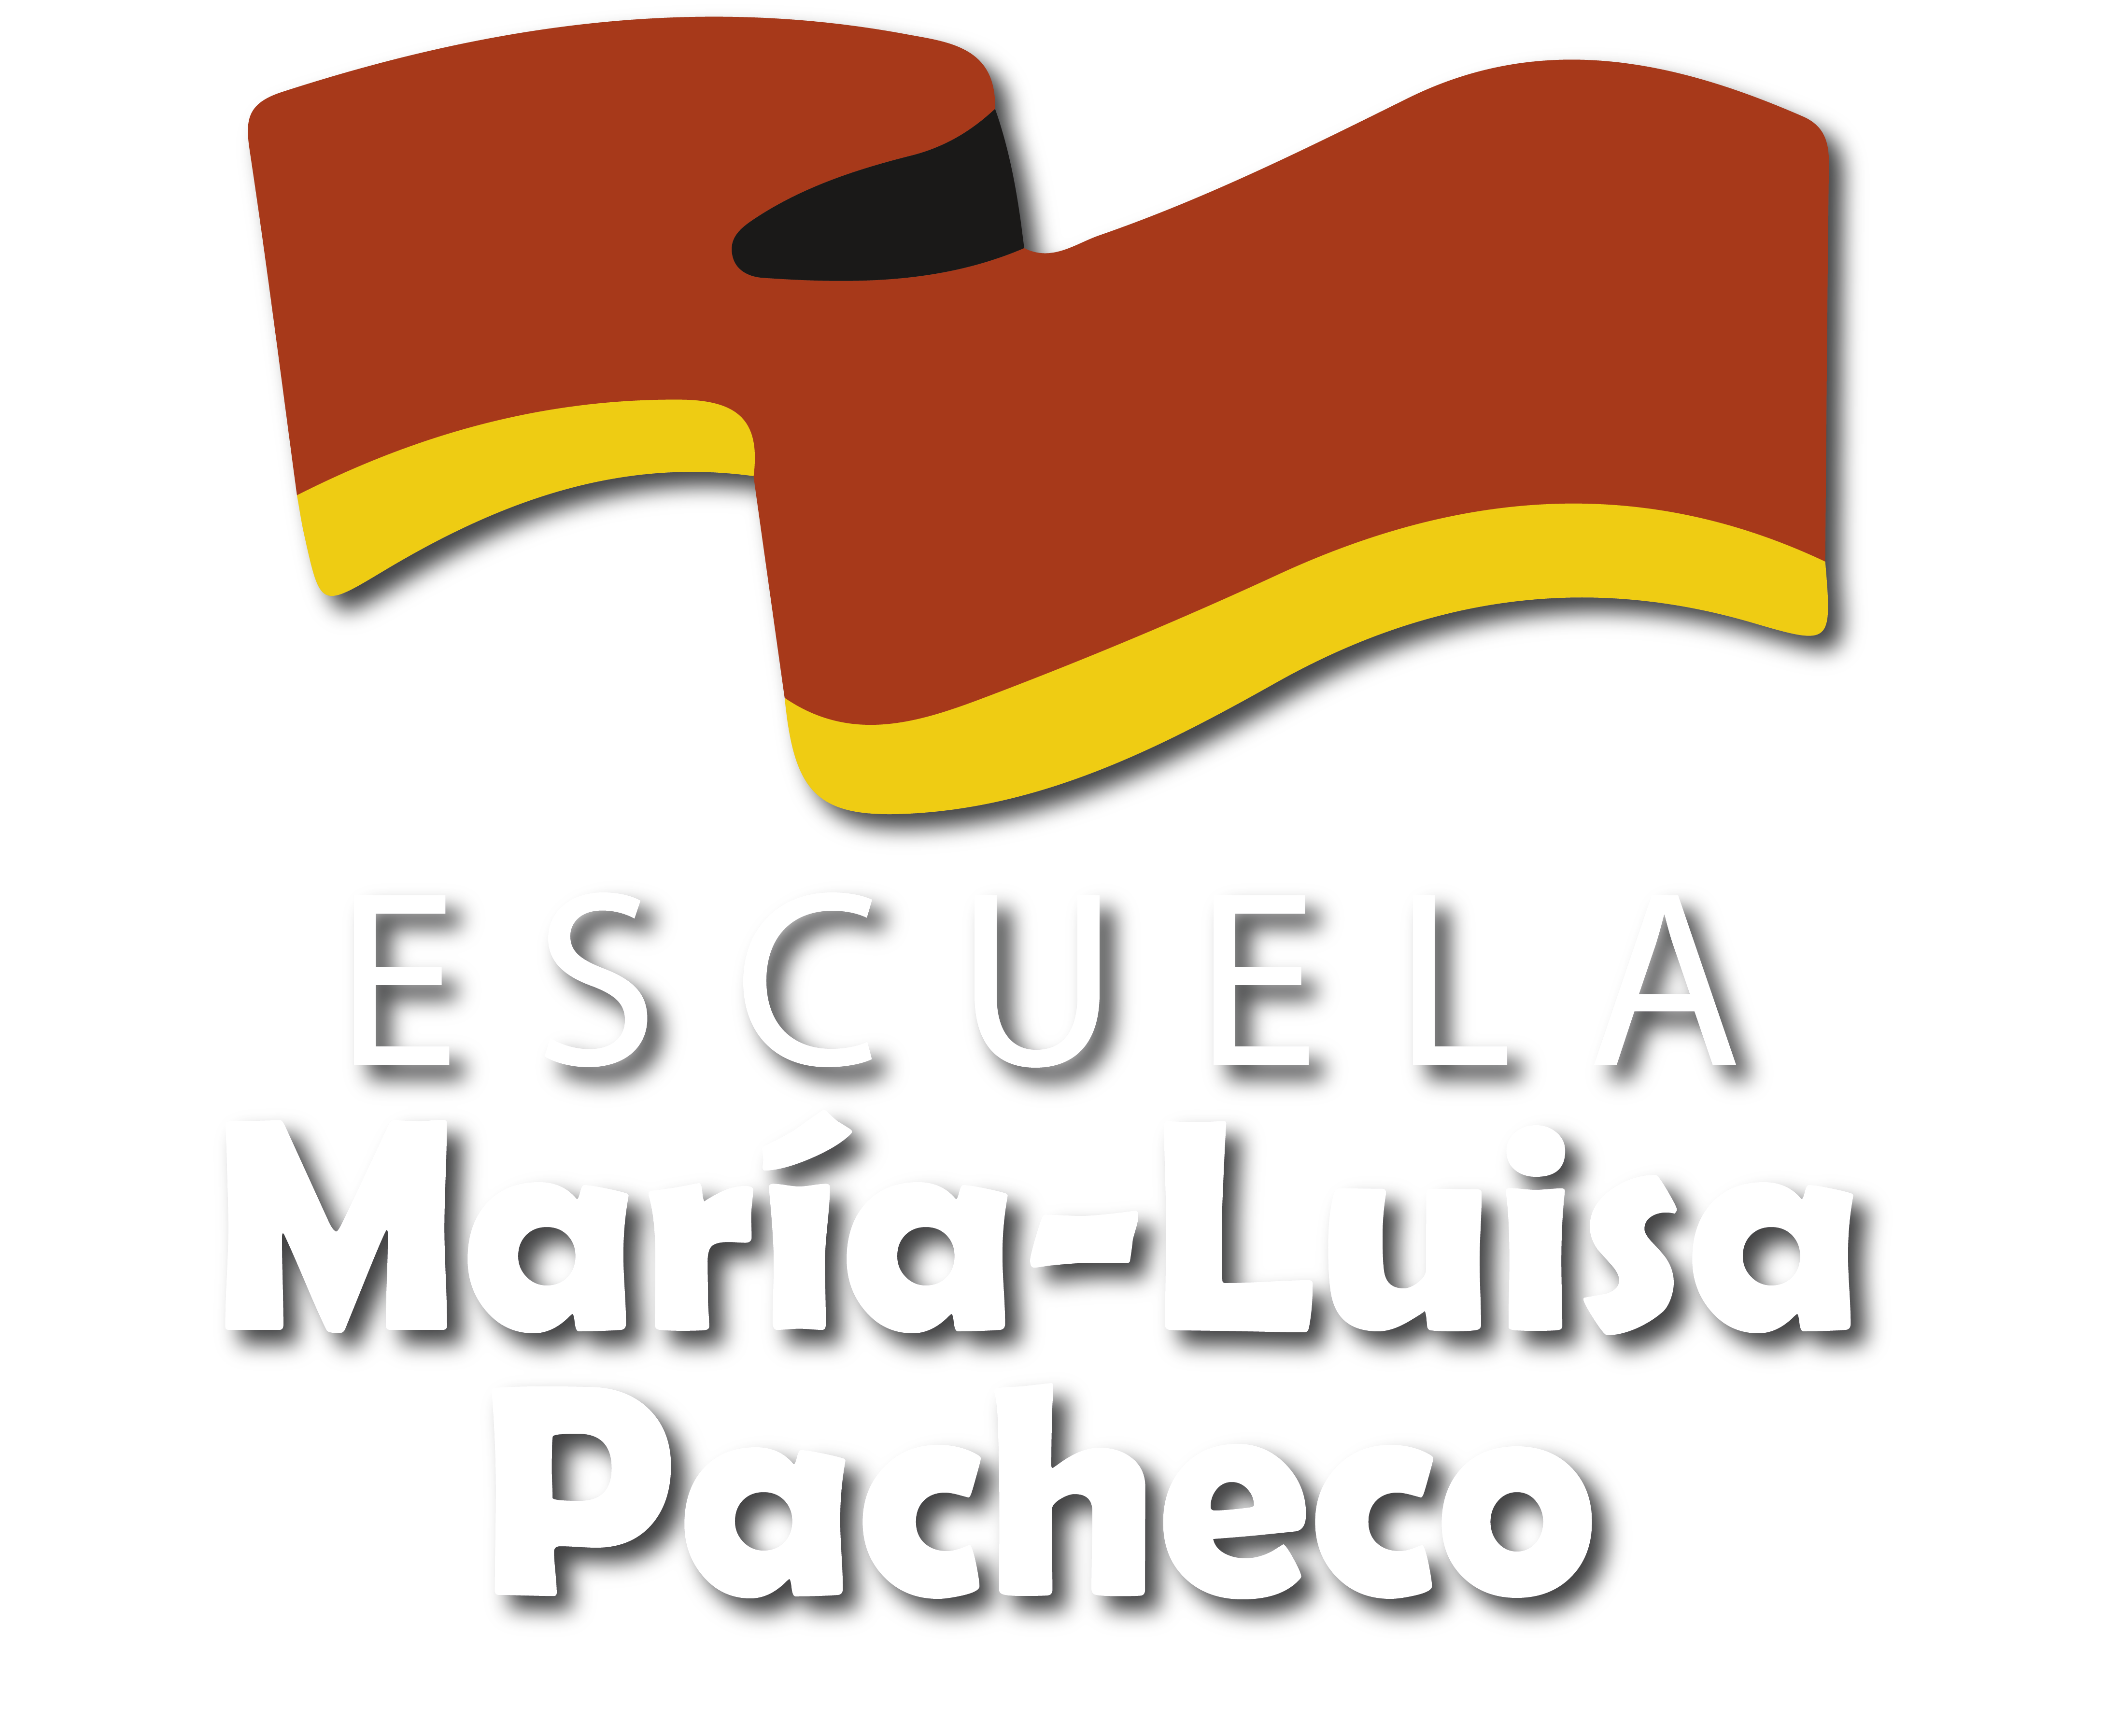 Escuela María Luisa Pacheco